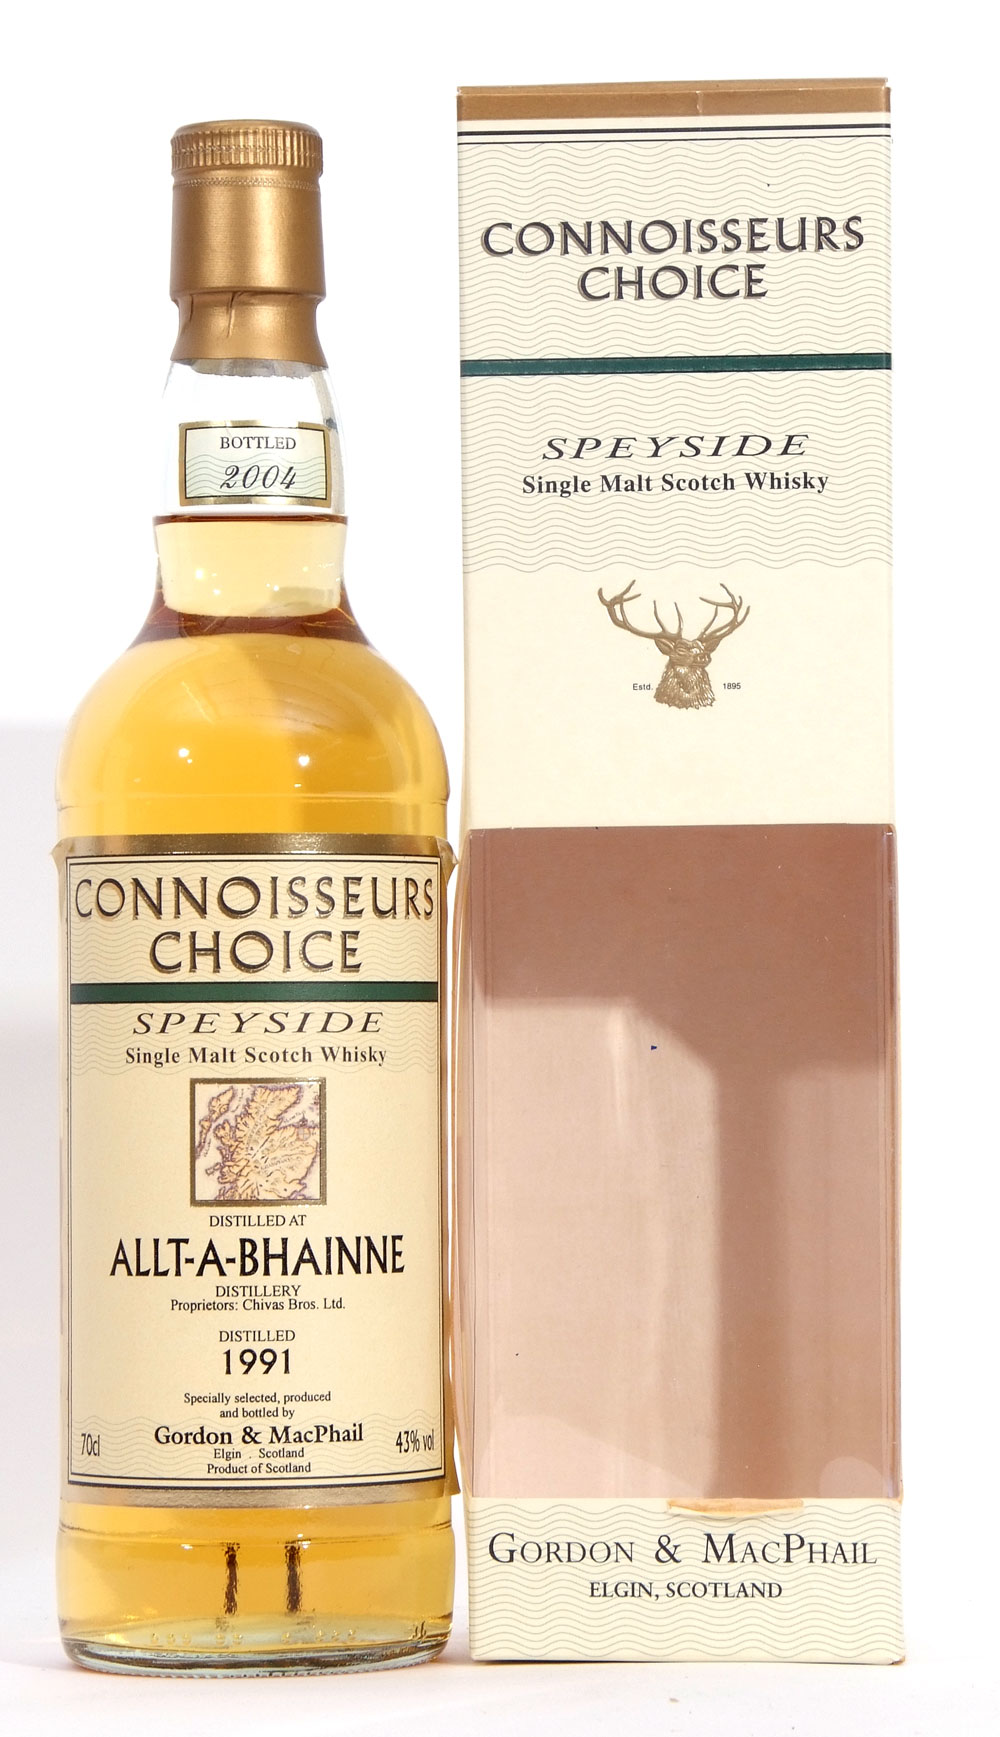 Allt-a-bhainne Speyside Single Malt Scotch Whisky, distilled 1991, Connoisseurs Choice by Gordon &